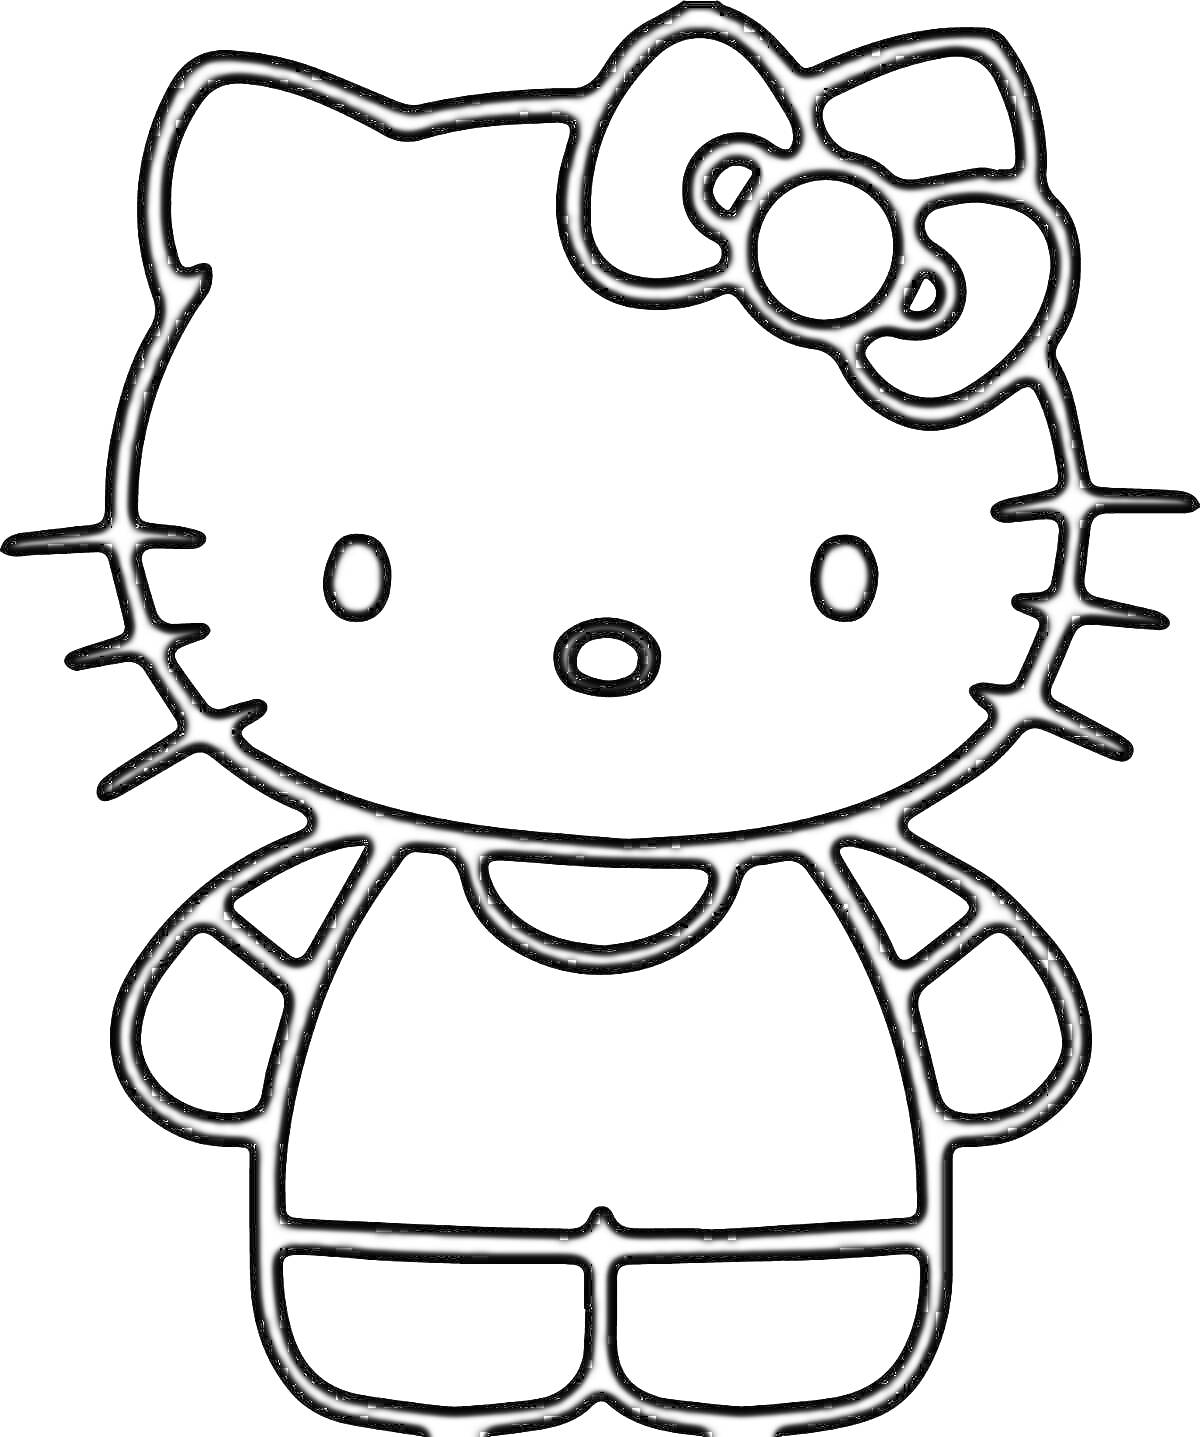 Раскраска Чёрно-белая раскраска с изображением котёнка с бантом на голове и в простом костюме